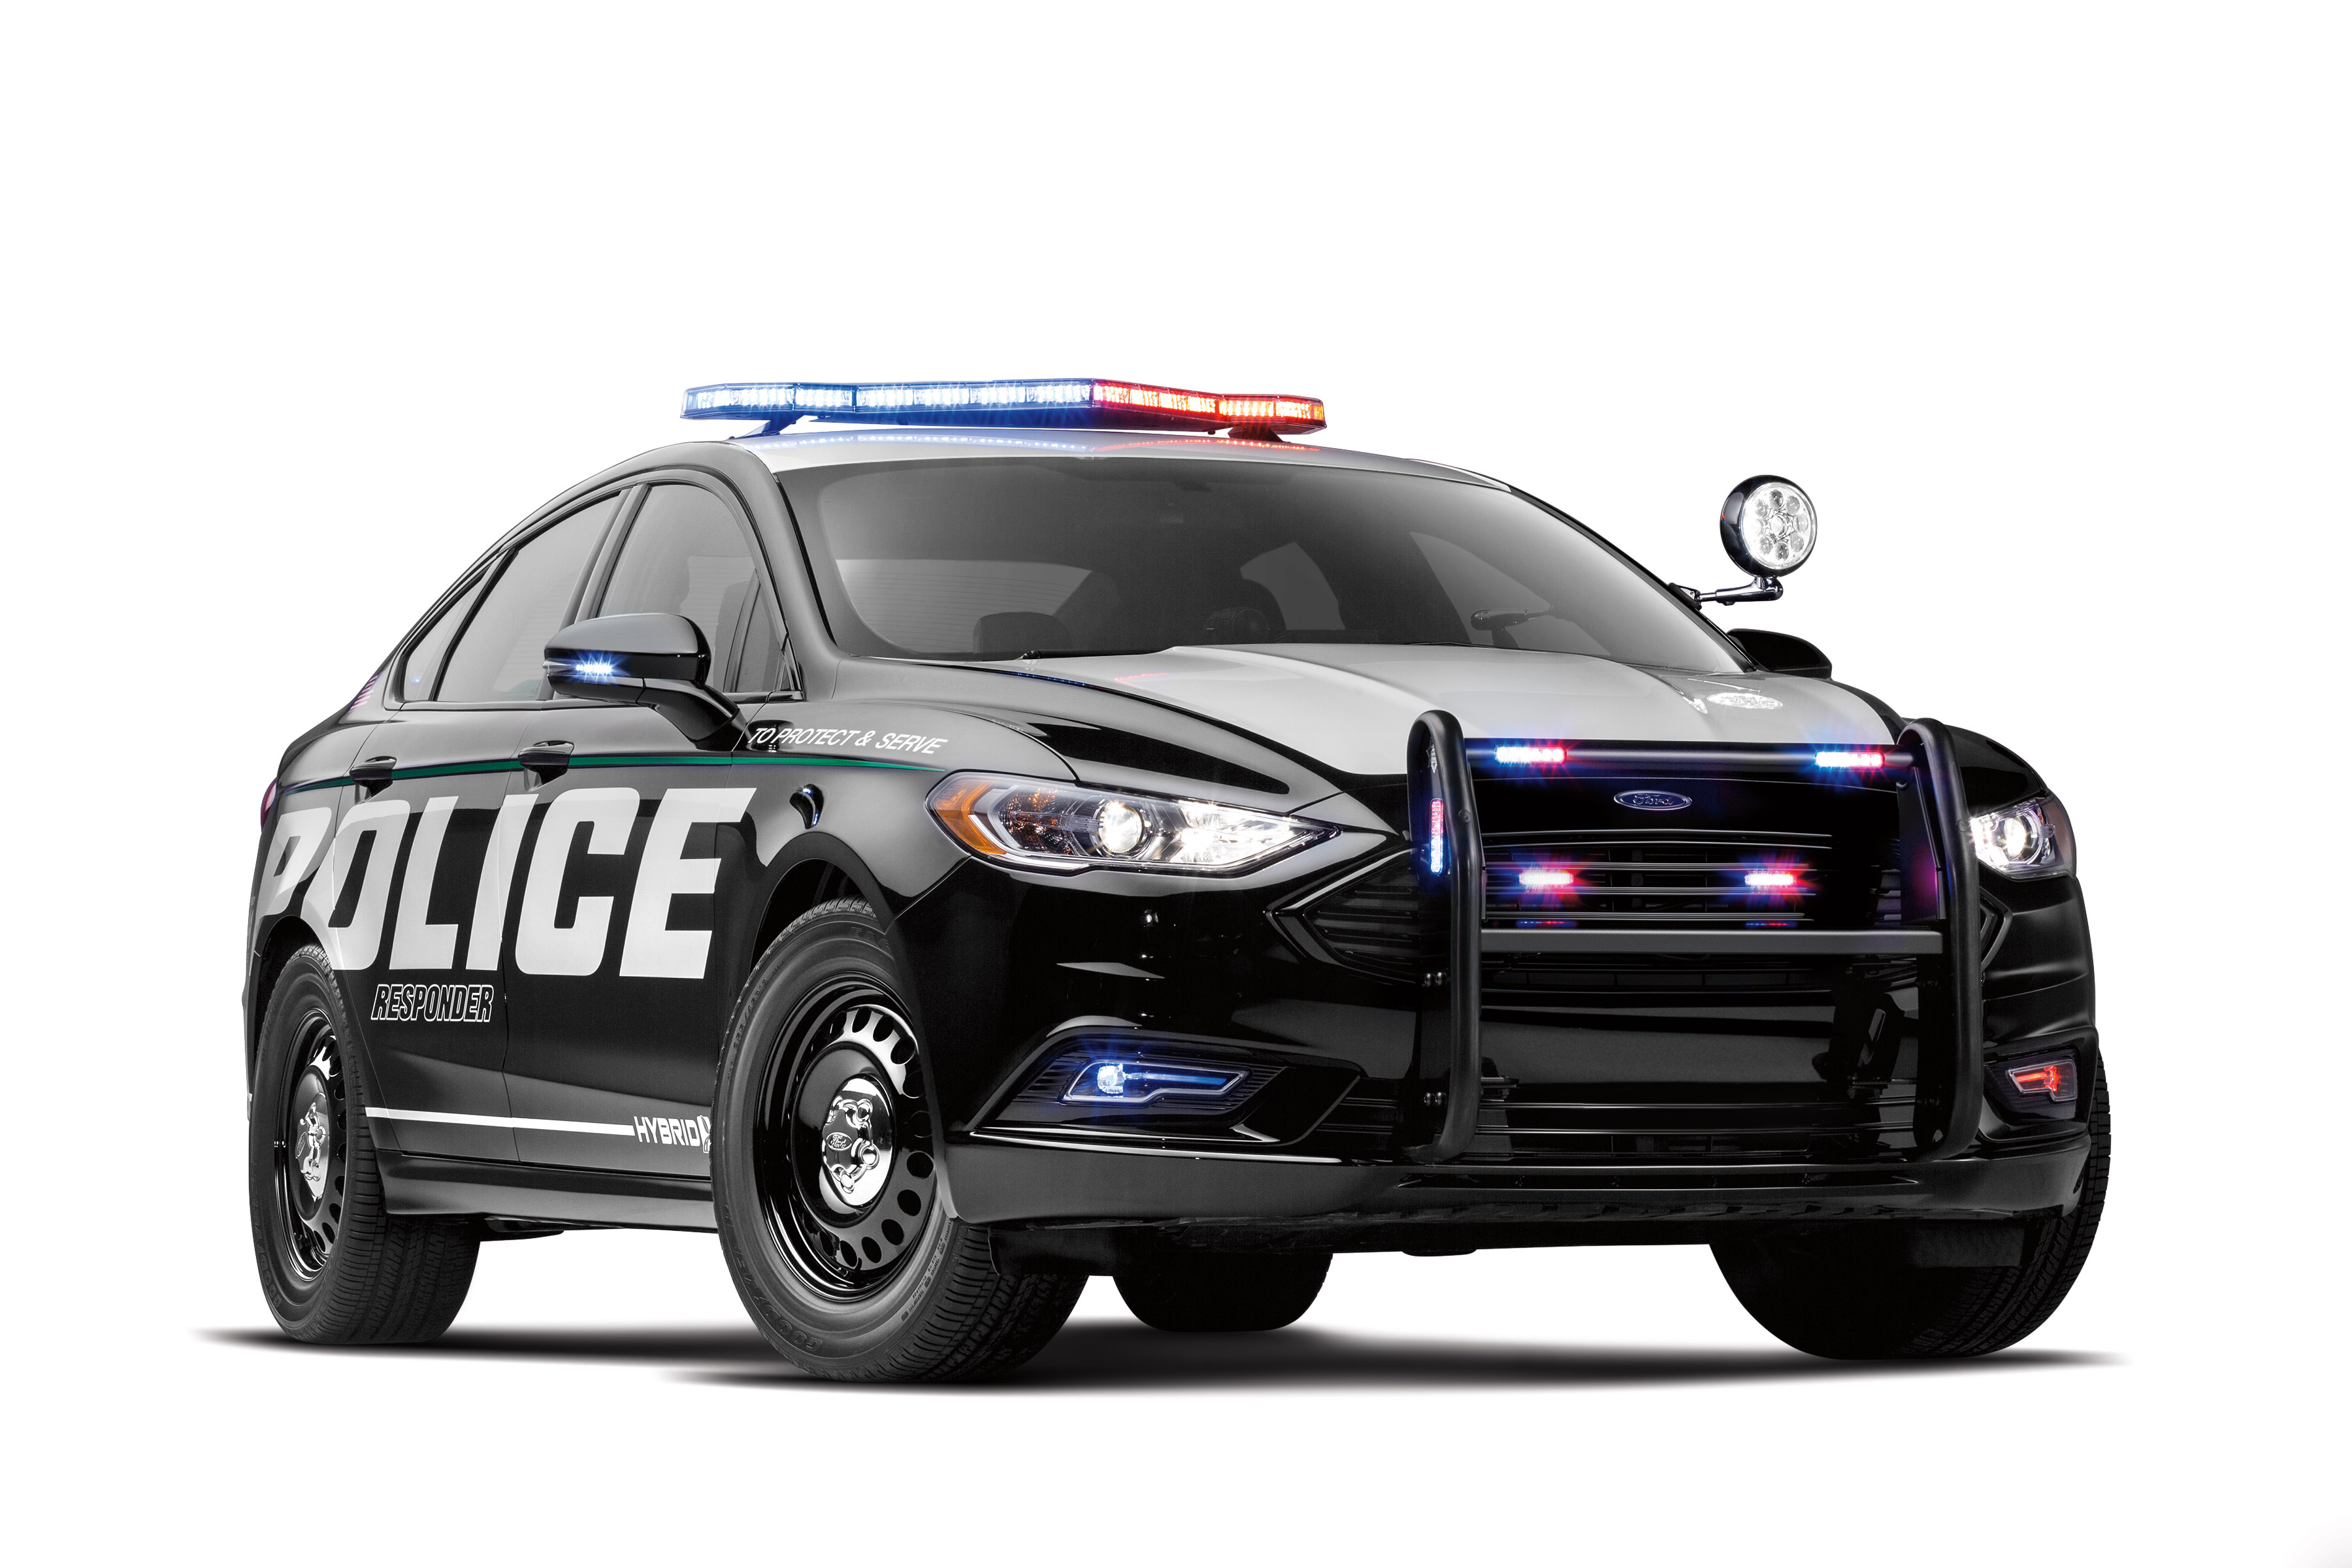 Нужны полицейские машины. Ford Police Interceptor sedan. Форд Police Interceptor седан. Ford Police Interceptor sedan 2010. Ford Fusion Interceptor.